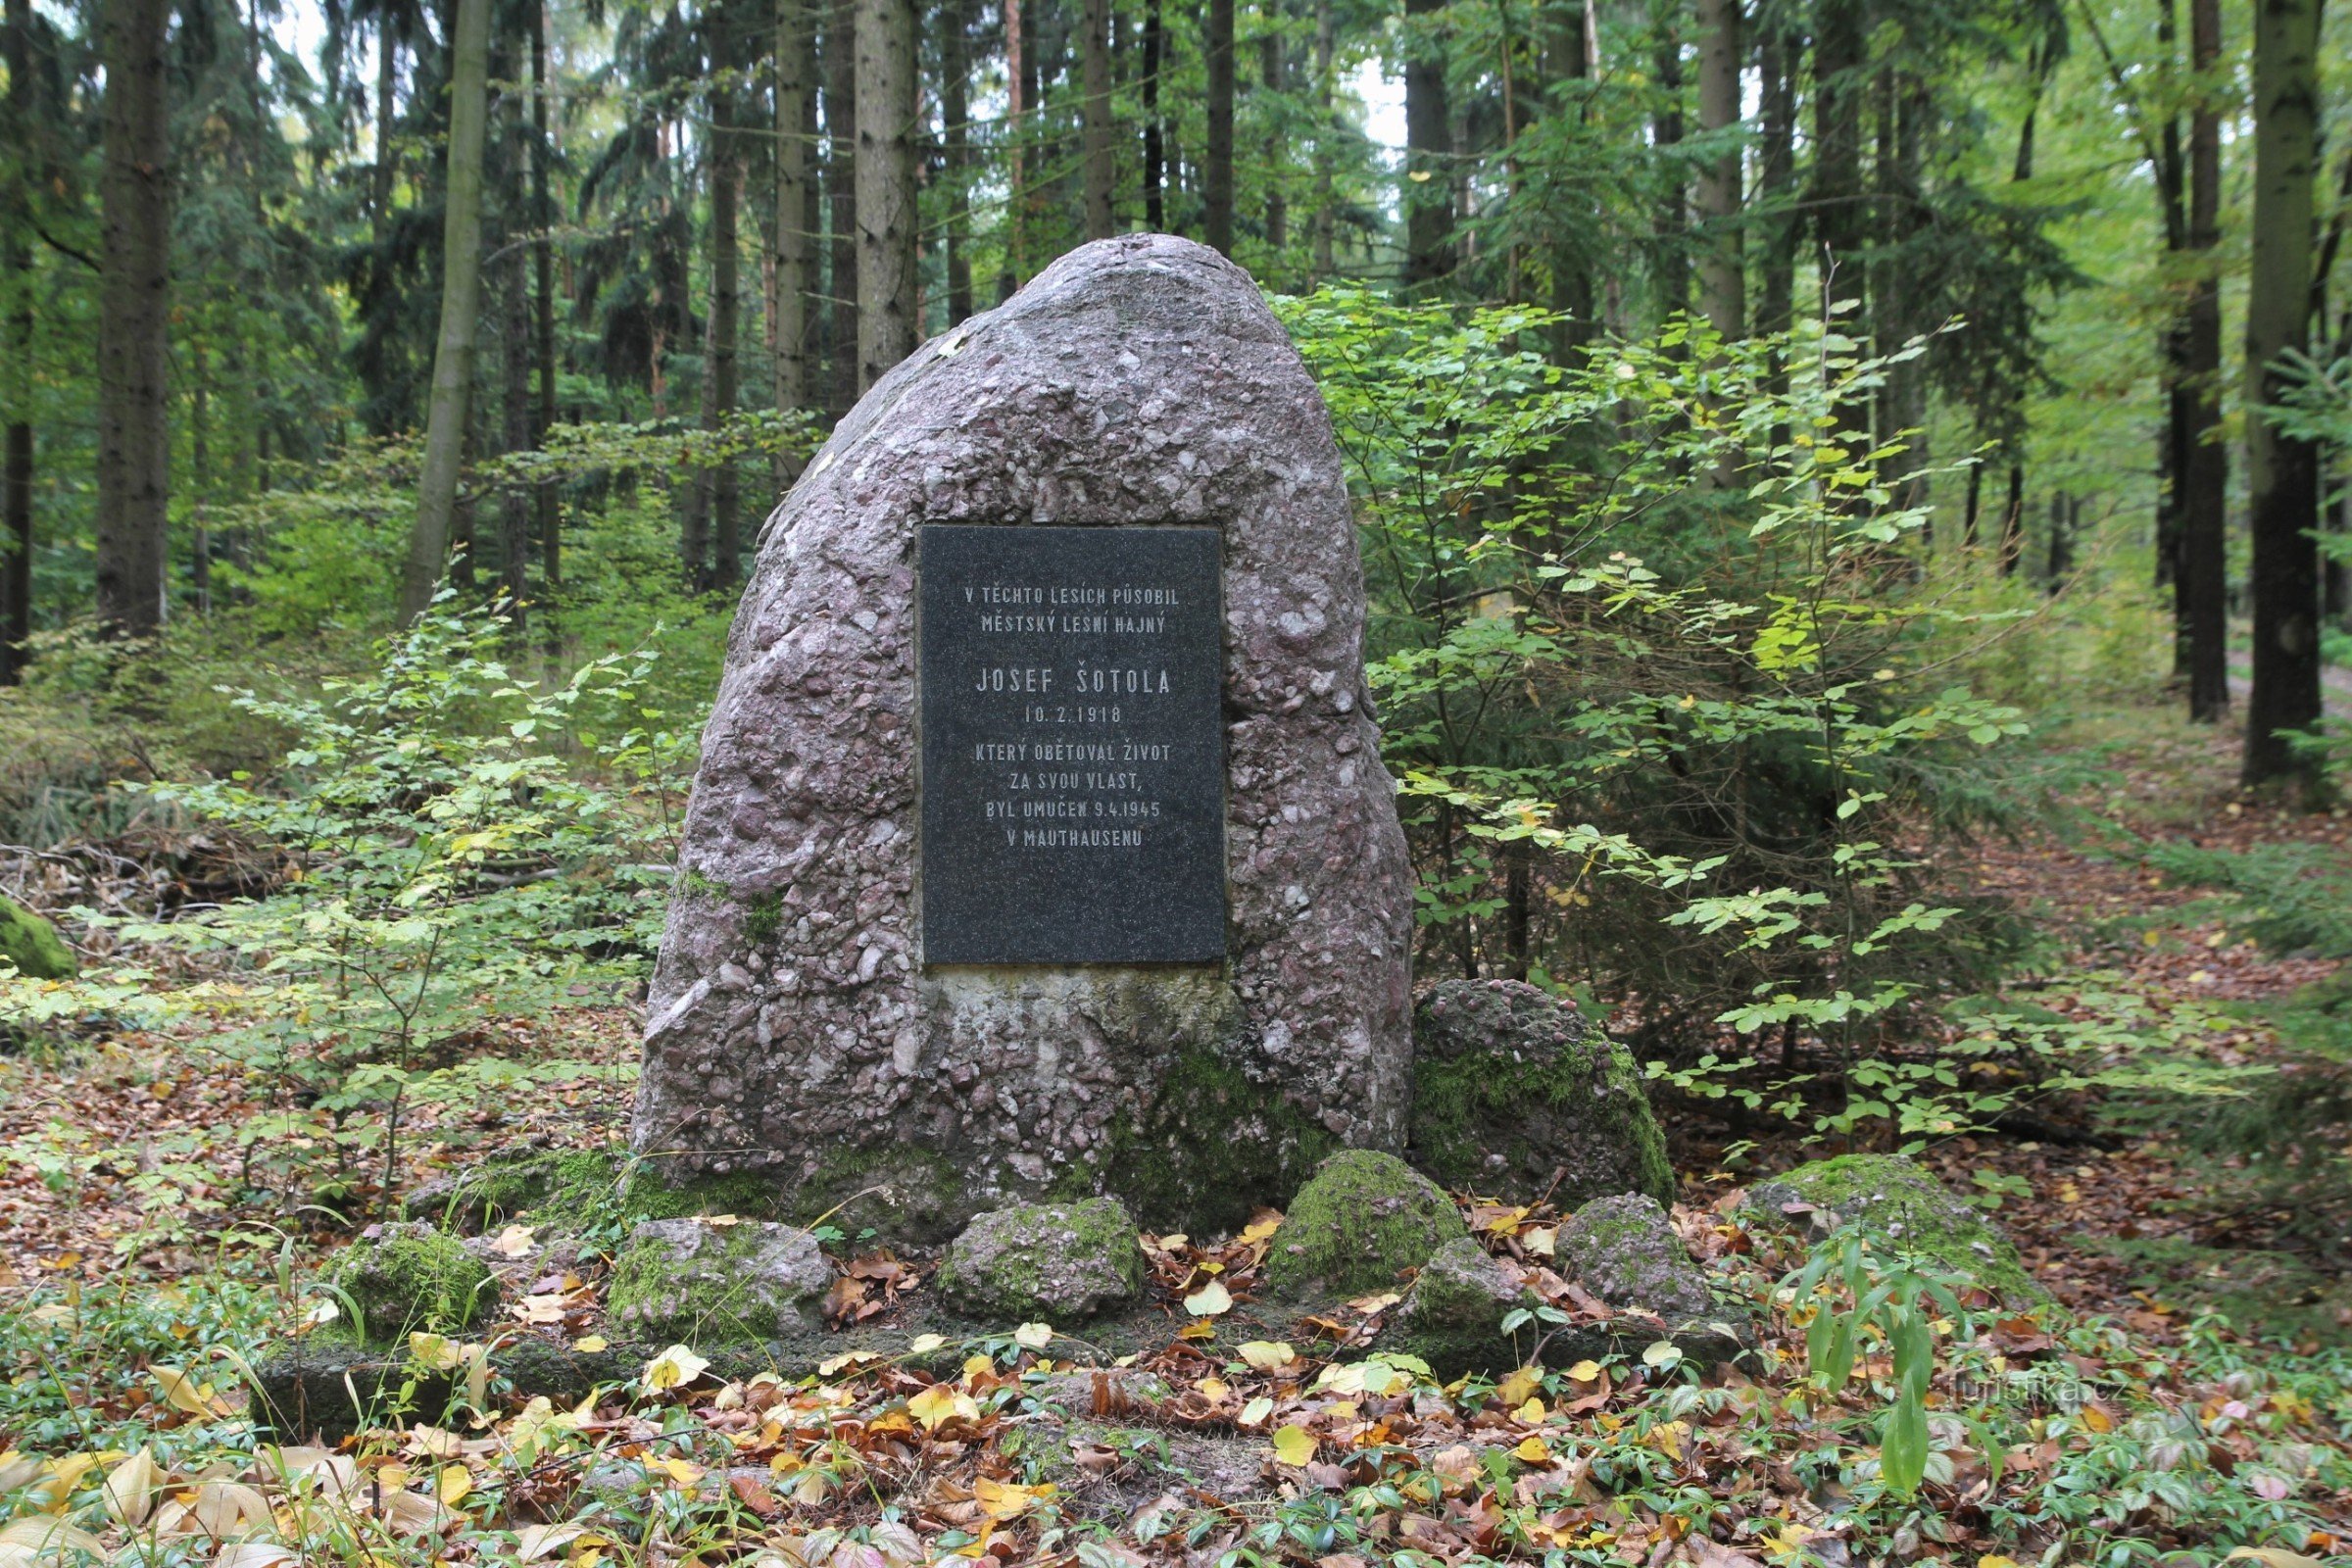 Spomen obilježje Josefu Šotoli nalazi se na maloj šumskoj čistini